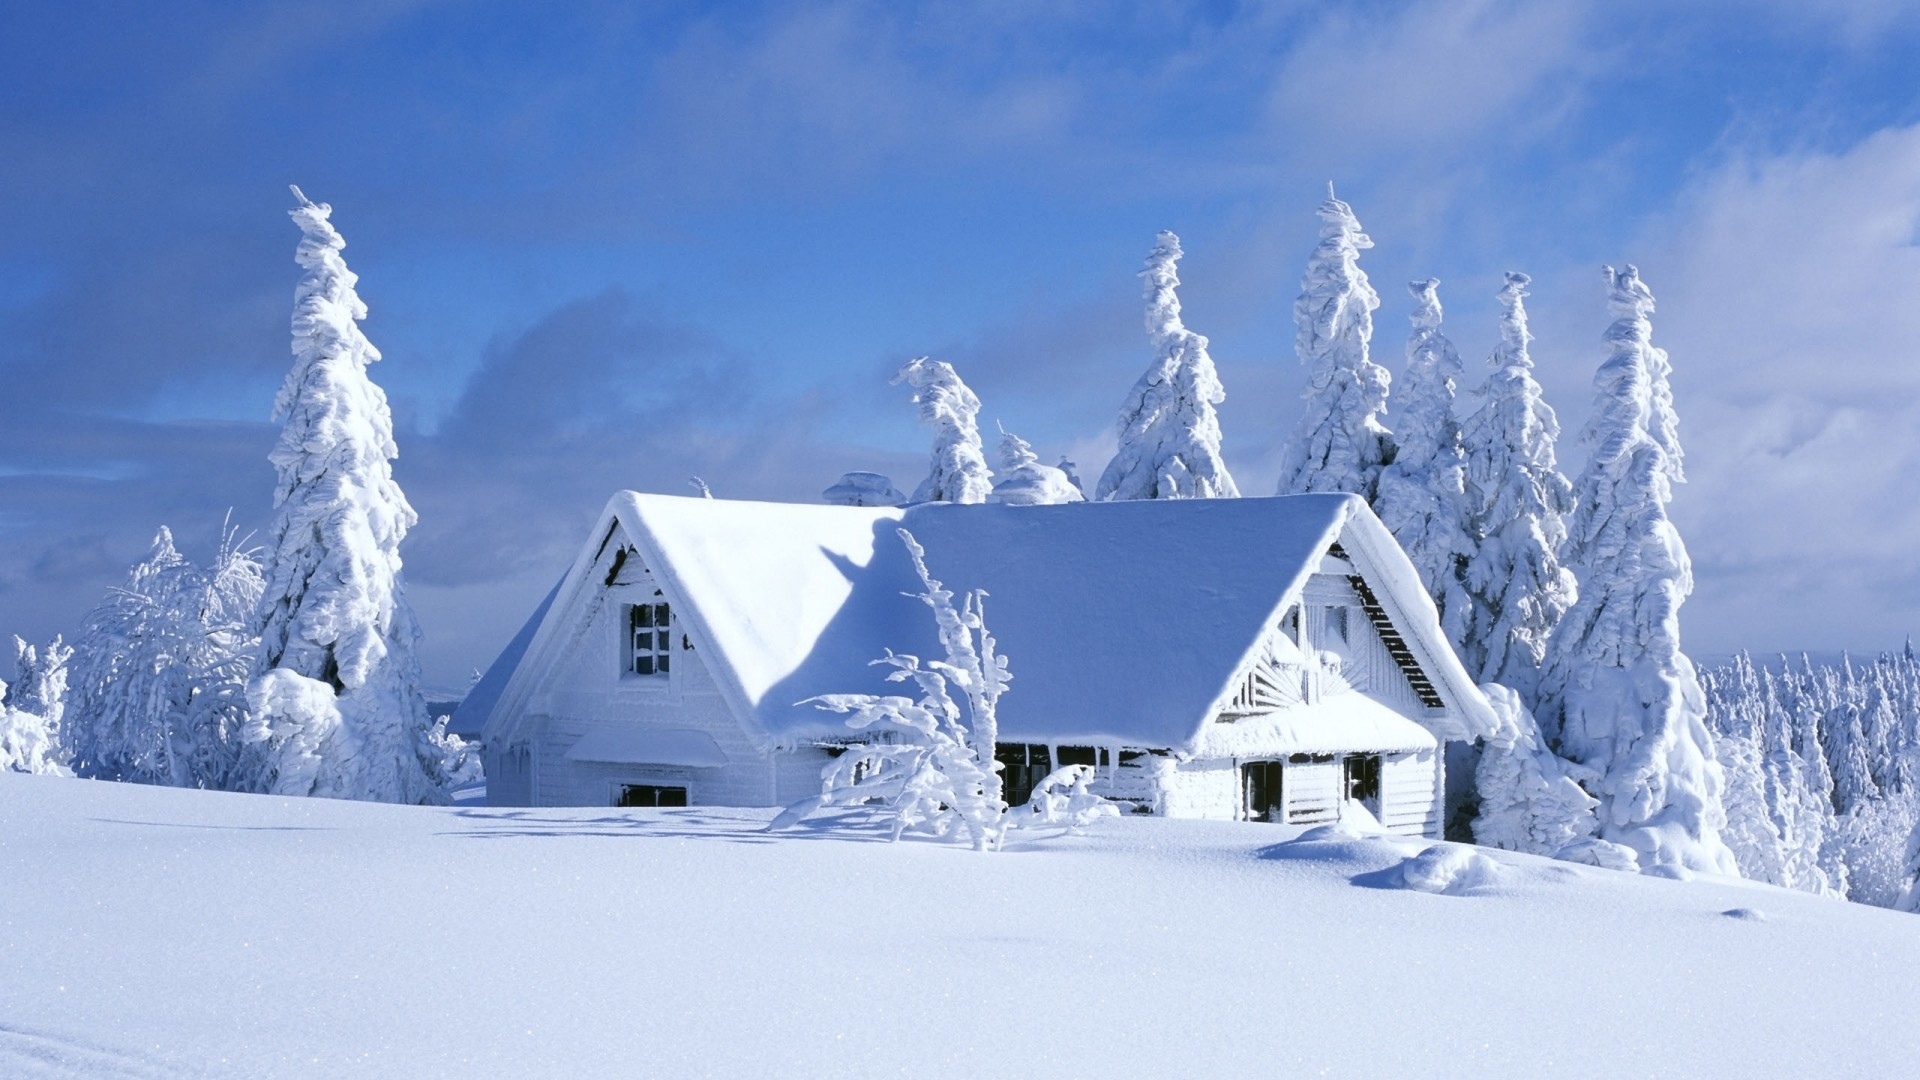 Снегом укрыты дома. Зимний домик. Заснеженный домик. Домик в снегу. Зима пейзаж.